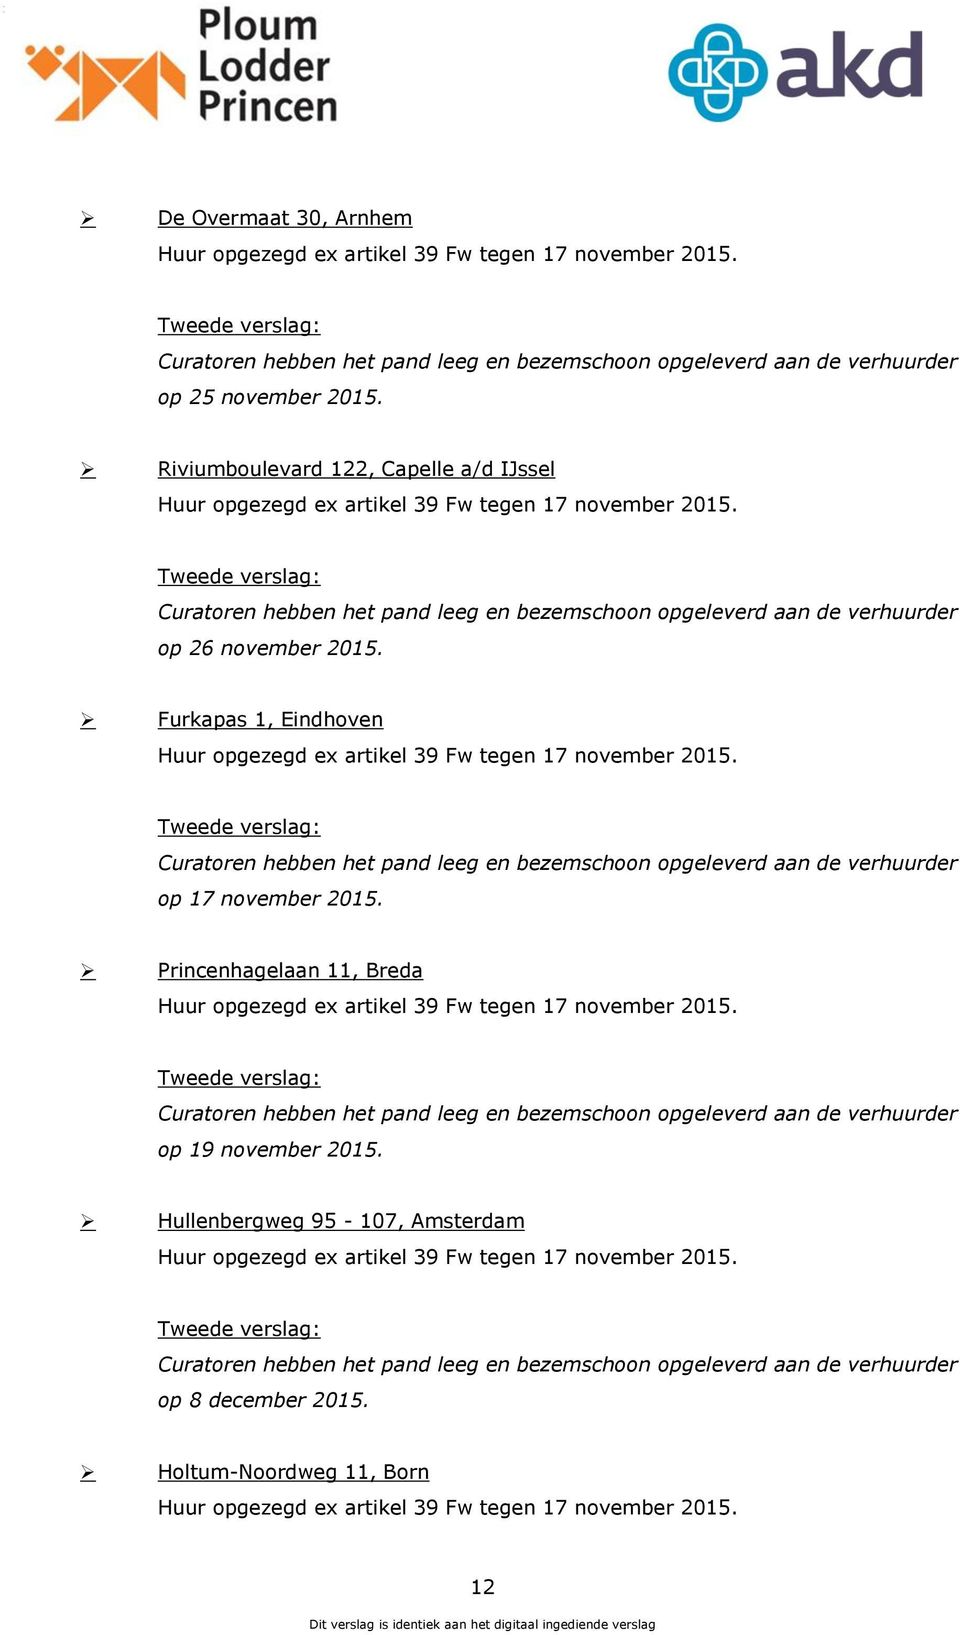 Furkapas 1, Eindhoven Huur opgezegd ex artikel 39 Fw tegen 17 november 2015. Curatoren hebben het pand leeg en bezemschoon opgeleverd aan de verhuurder op 17 november 2015.